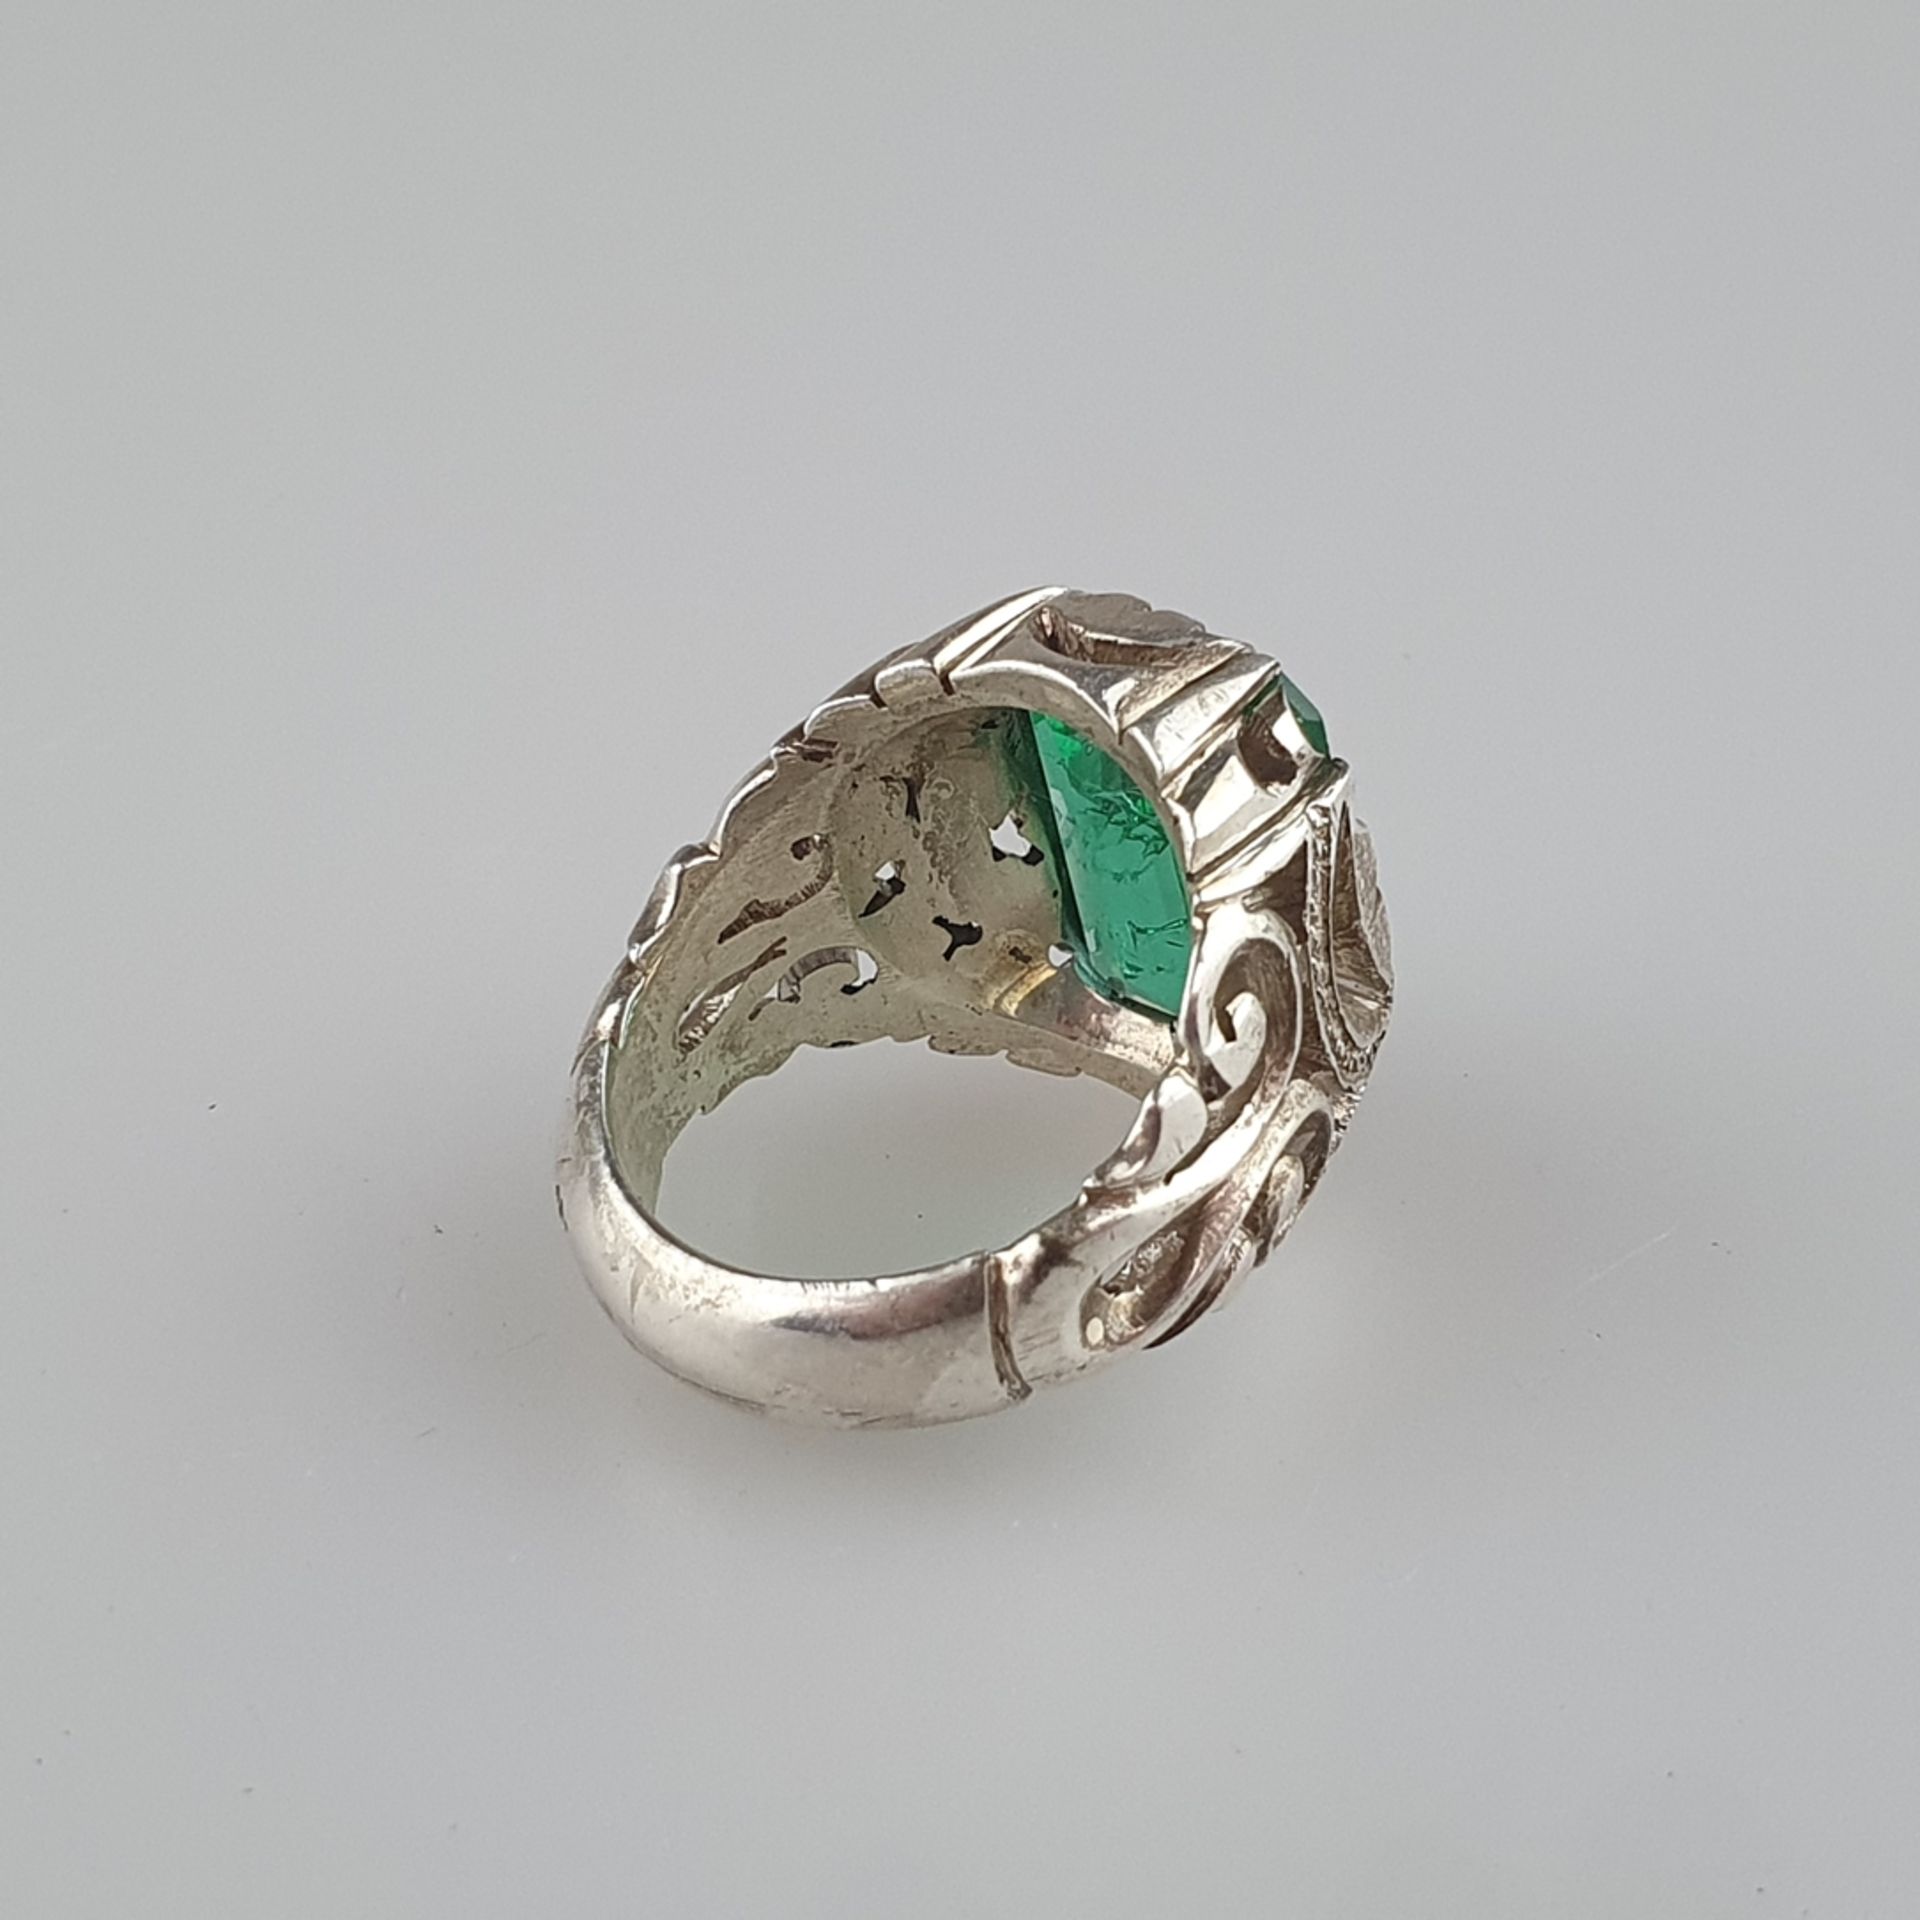 Schwerer Herrenring mit Smaragd - Silber massiv, Fassung ornamental durchbrochen, Ringkopf besetzt - Image 3 of 8